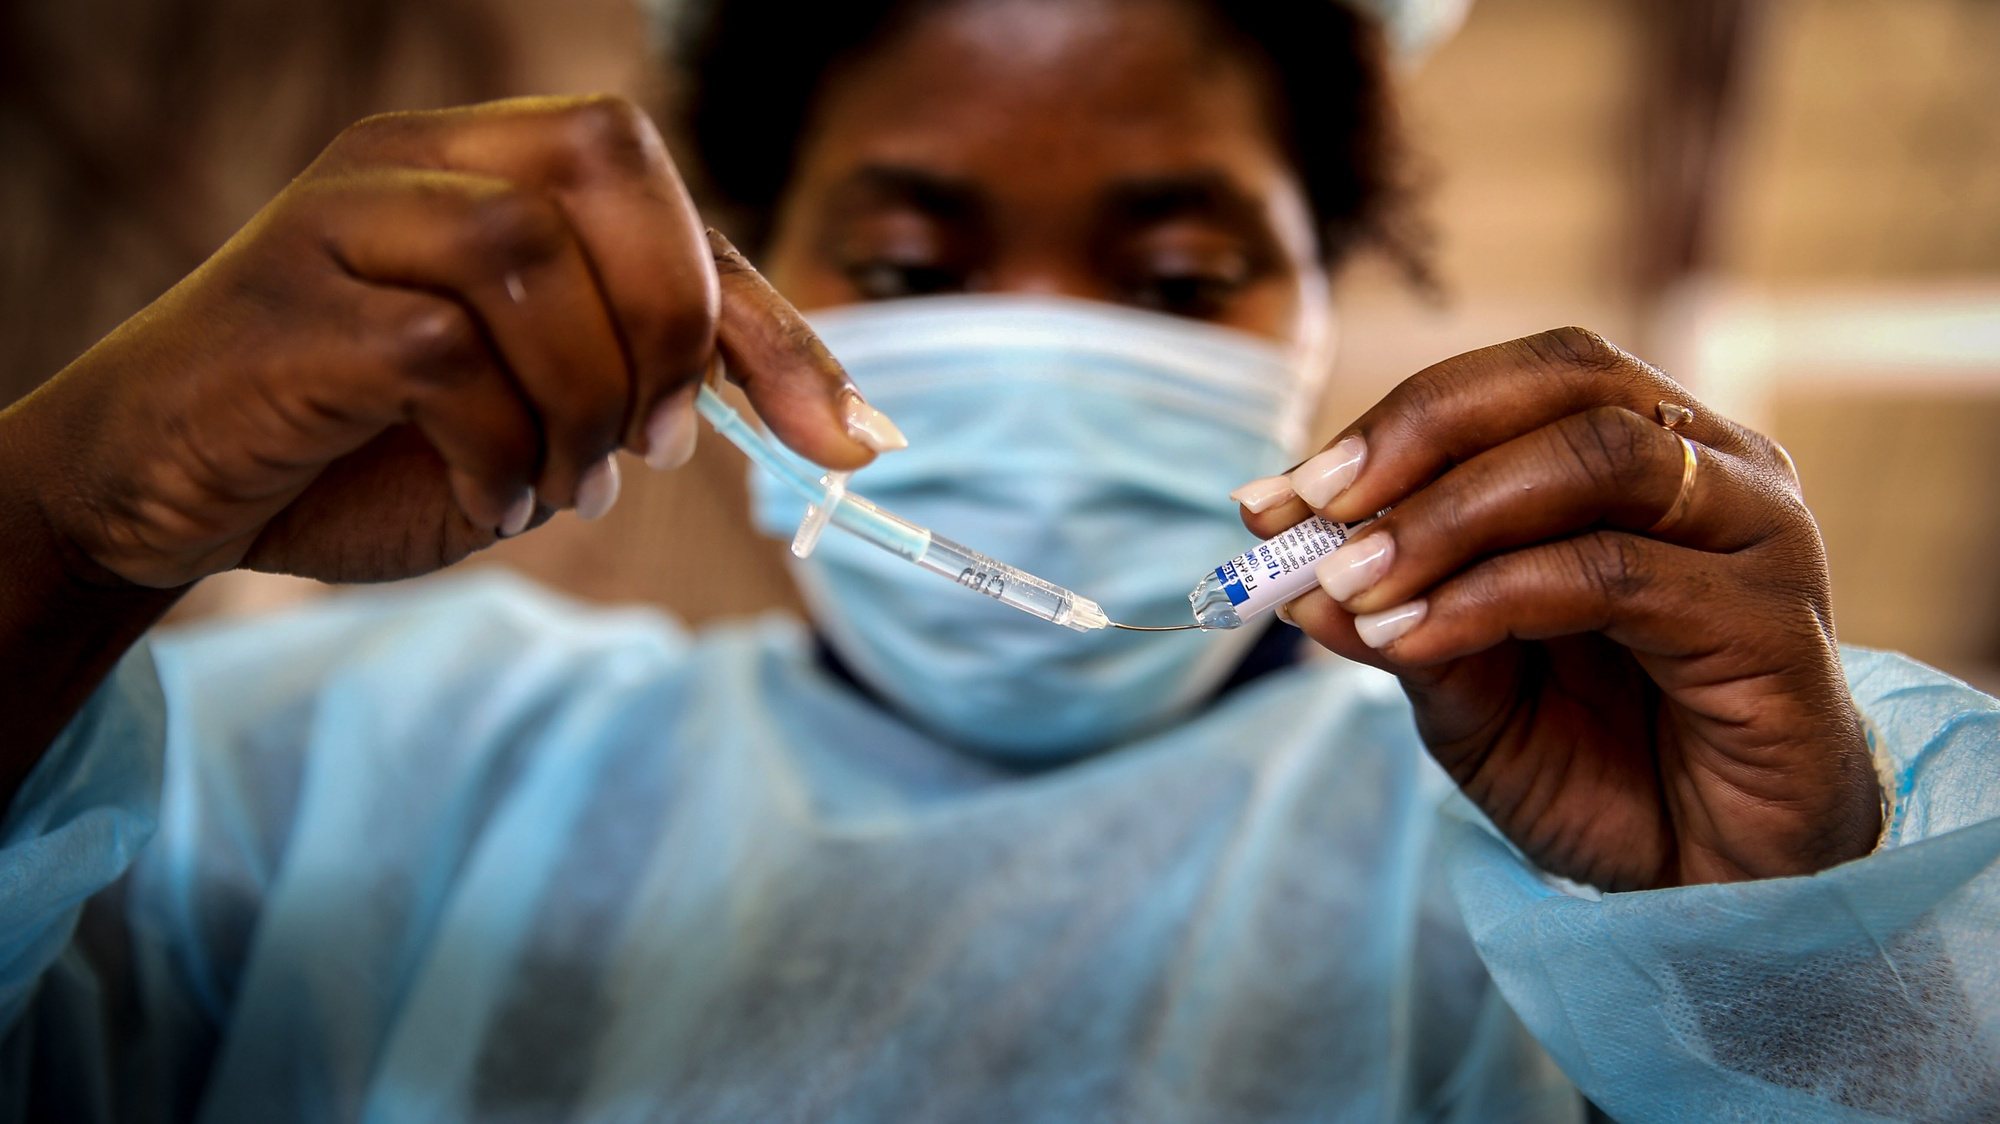 Reportagem sobre afluência aos centros de vacinação após novas medidas restritivas e exigência de certificados de vacinação, posto Cidadela Desportiva, Luanda, Angola, 01 de outubro de 2021. (ACOMPANHA TEXTO DE 02 DE OUTUBRO DE 2021). AMPE ROGÉRIO/LUSA